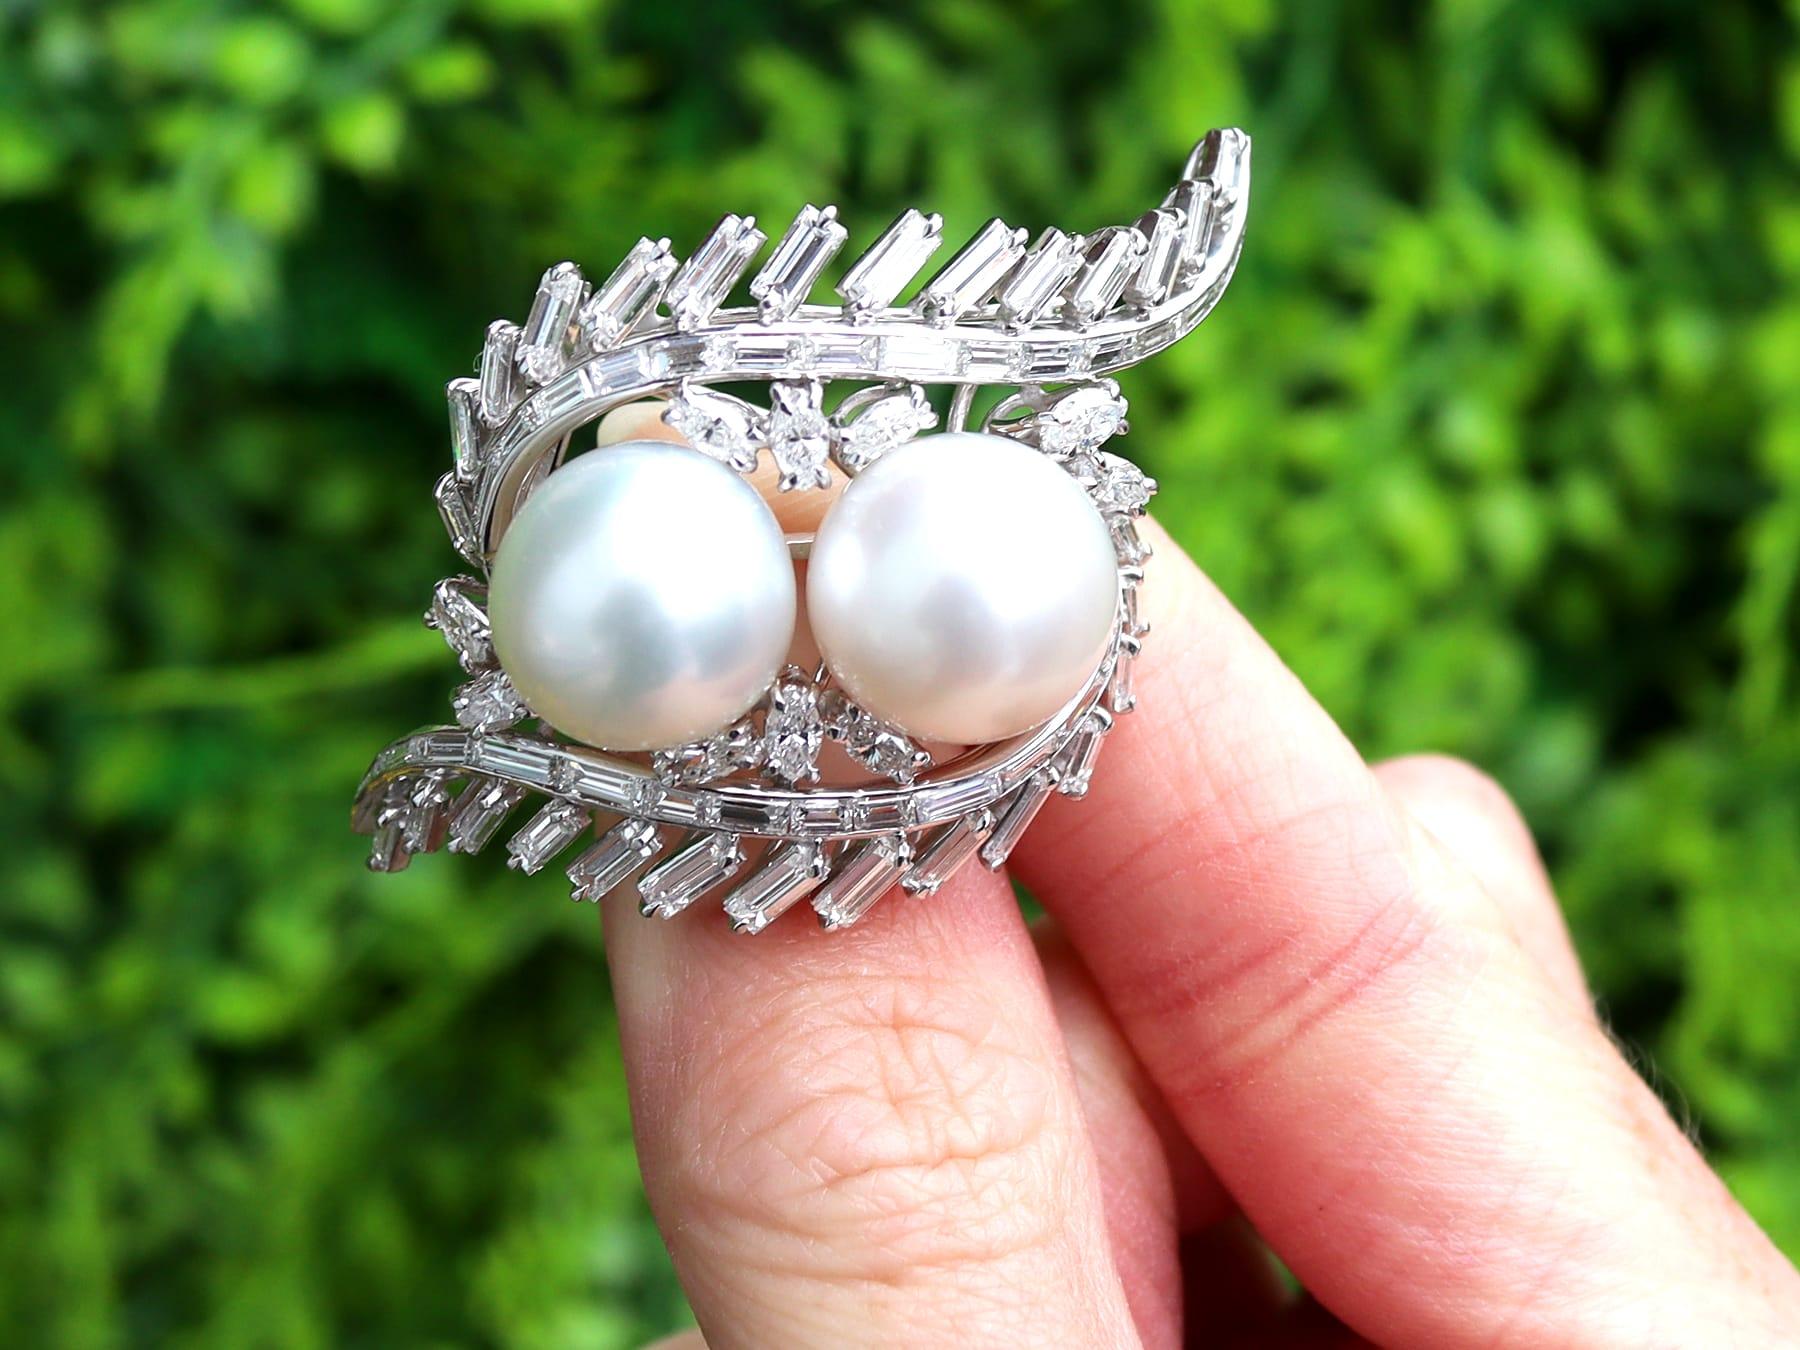 Superbe, belle et impressionnante broche vintage en perles des mers du Sud et diamants de 4,16 carats, en platine et en or blanc 12 carats. Elle fait partie de nos diverses collections de bijoux en perles vintage et de bijoux de succession.

Cette